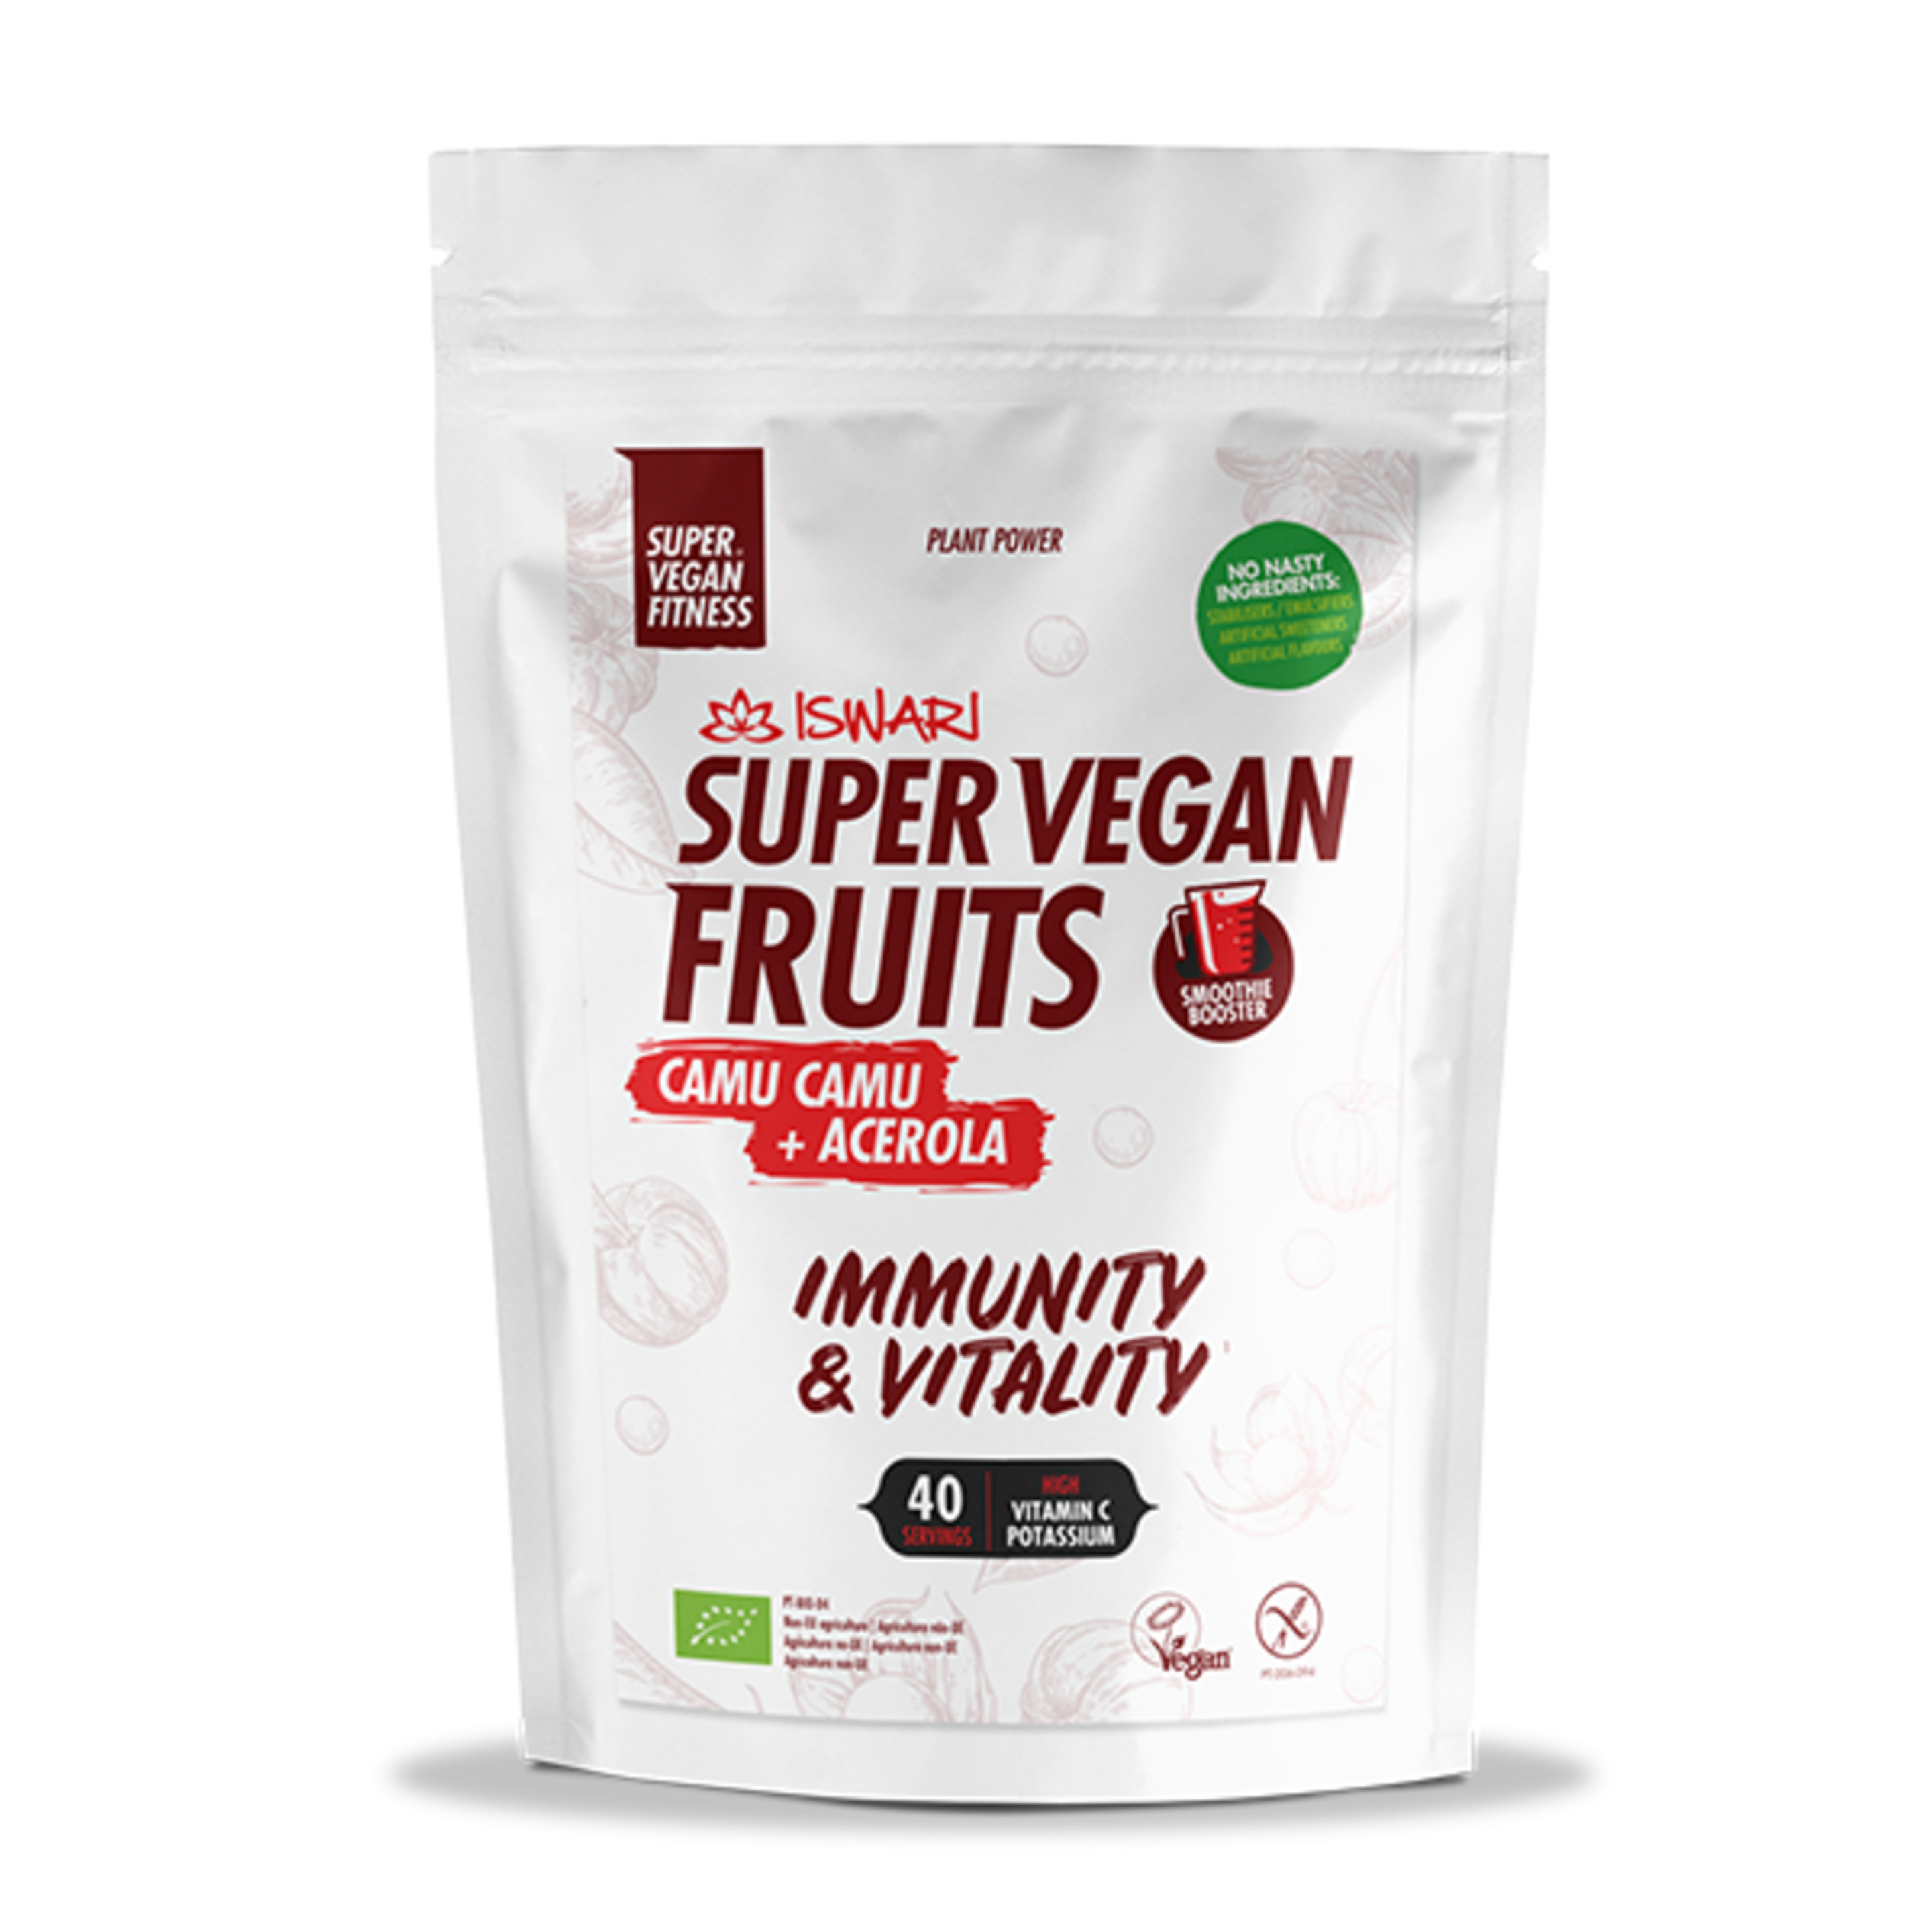 Super Vegan Fruits